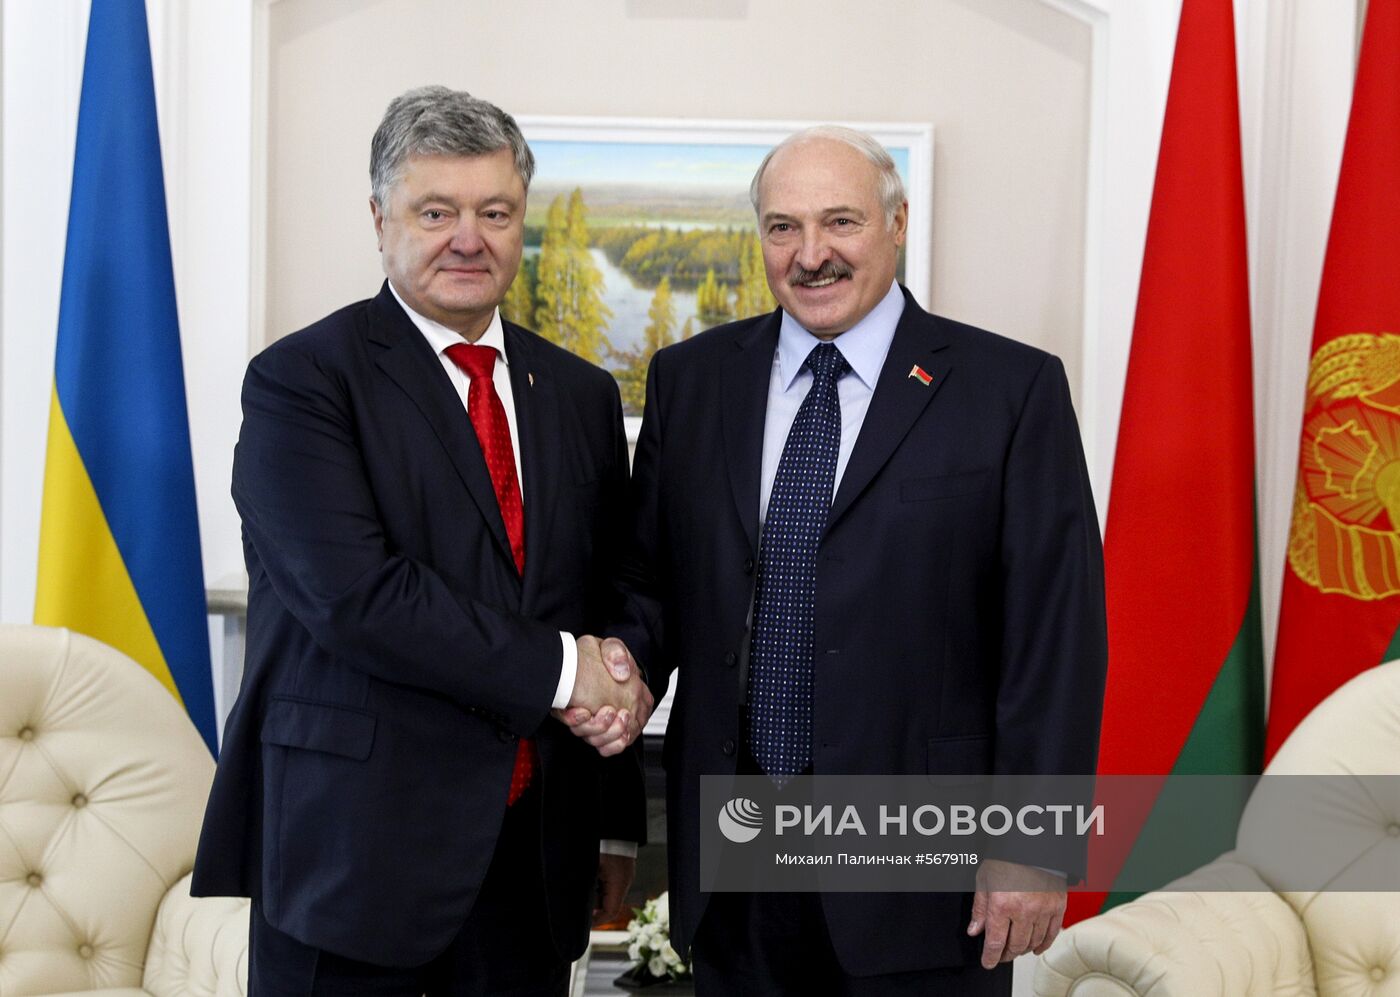 Президент Белоруссии А. Лукашенко провел встречу с президентом Украины П. Порошенко